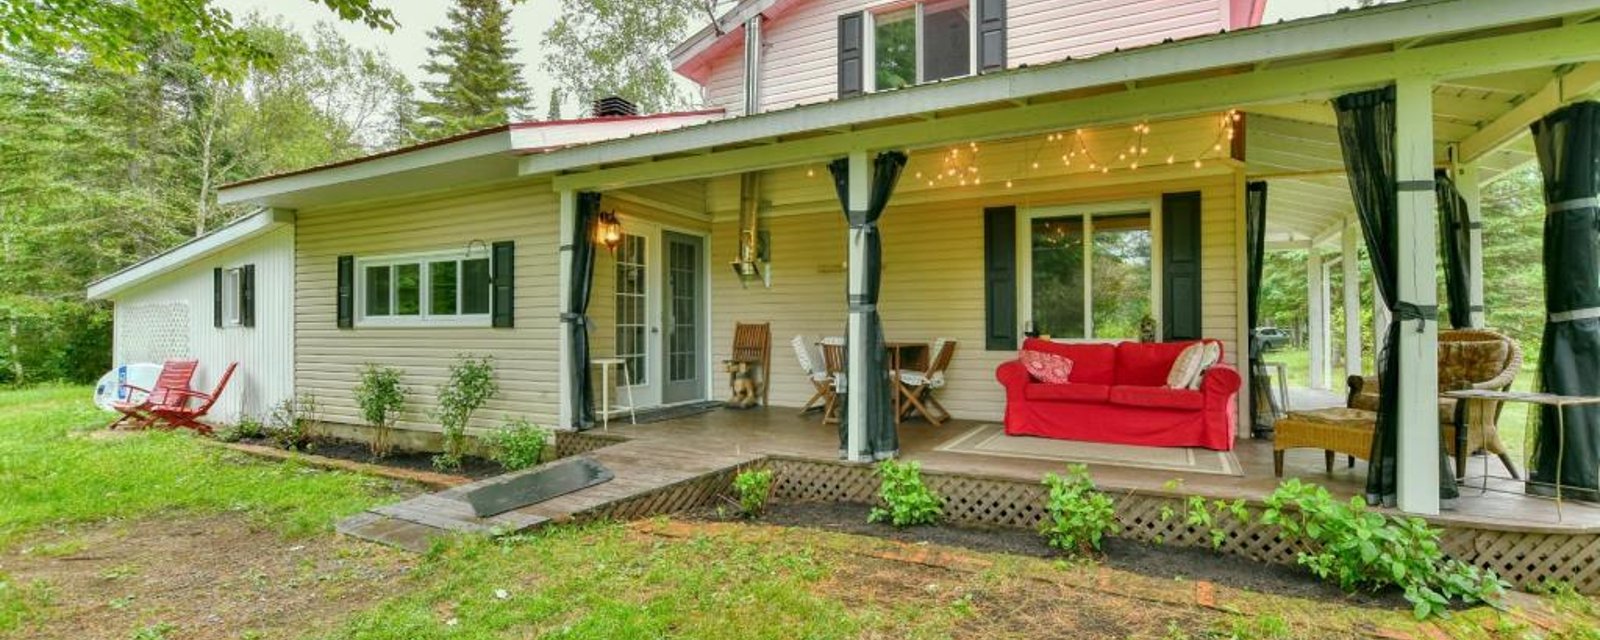 Chaleureuse maison meublée en bordure d'une paisible rivière à vendre pour 375 000$